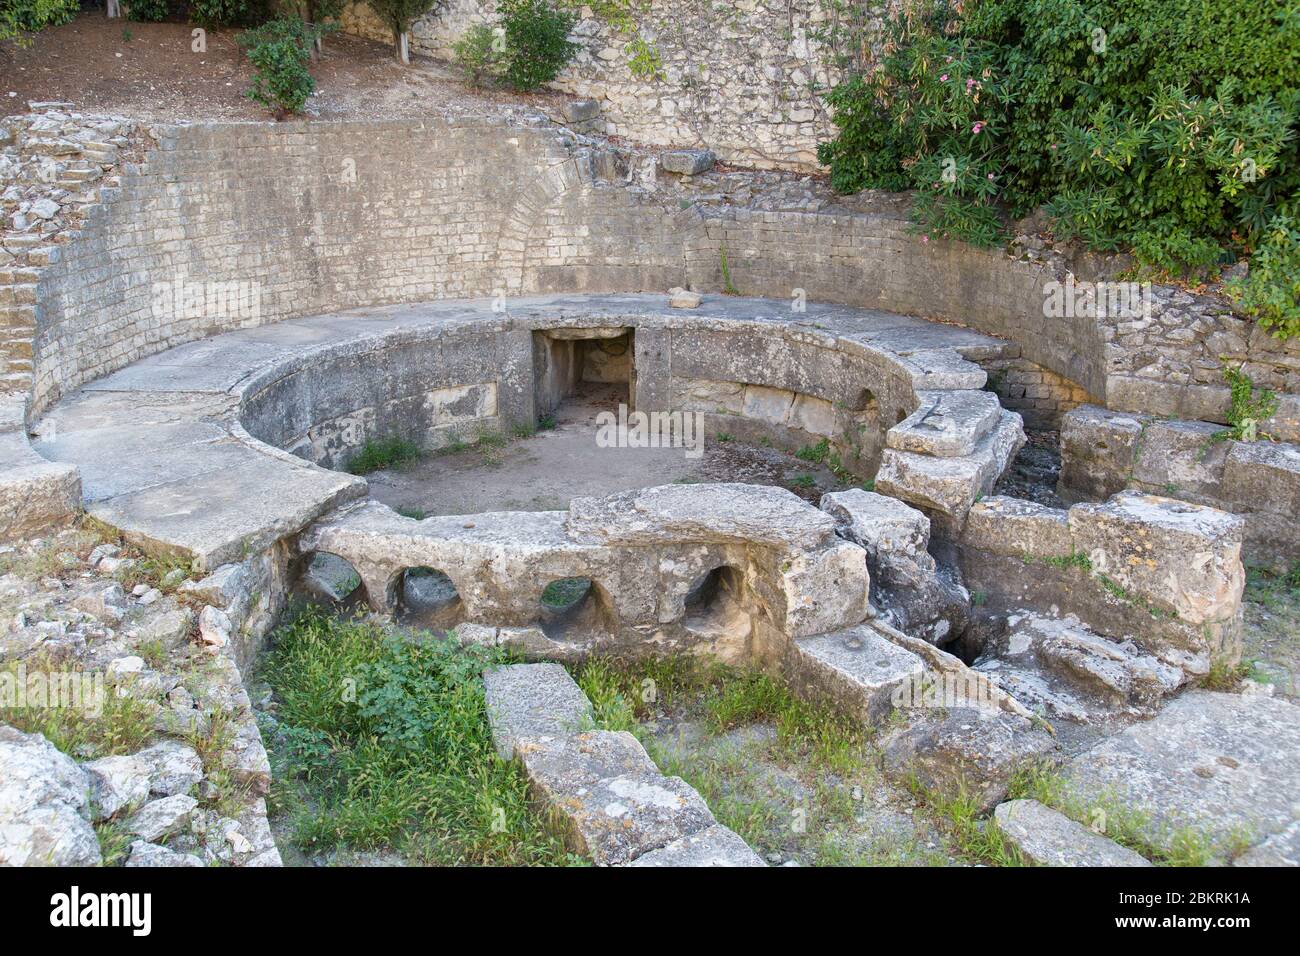 Frankreich, Gard, Nimes, vestige castellum divisorium, oder castellum aquae, römisches Denkmal des 1. Jahrhunderts, um Wasser in der römischen Stadt zu verteilen Stockfoto